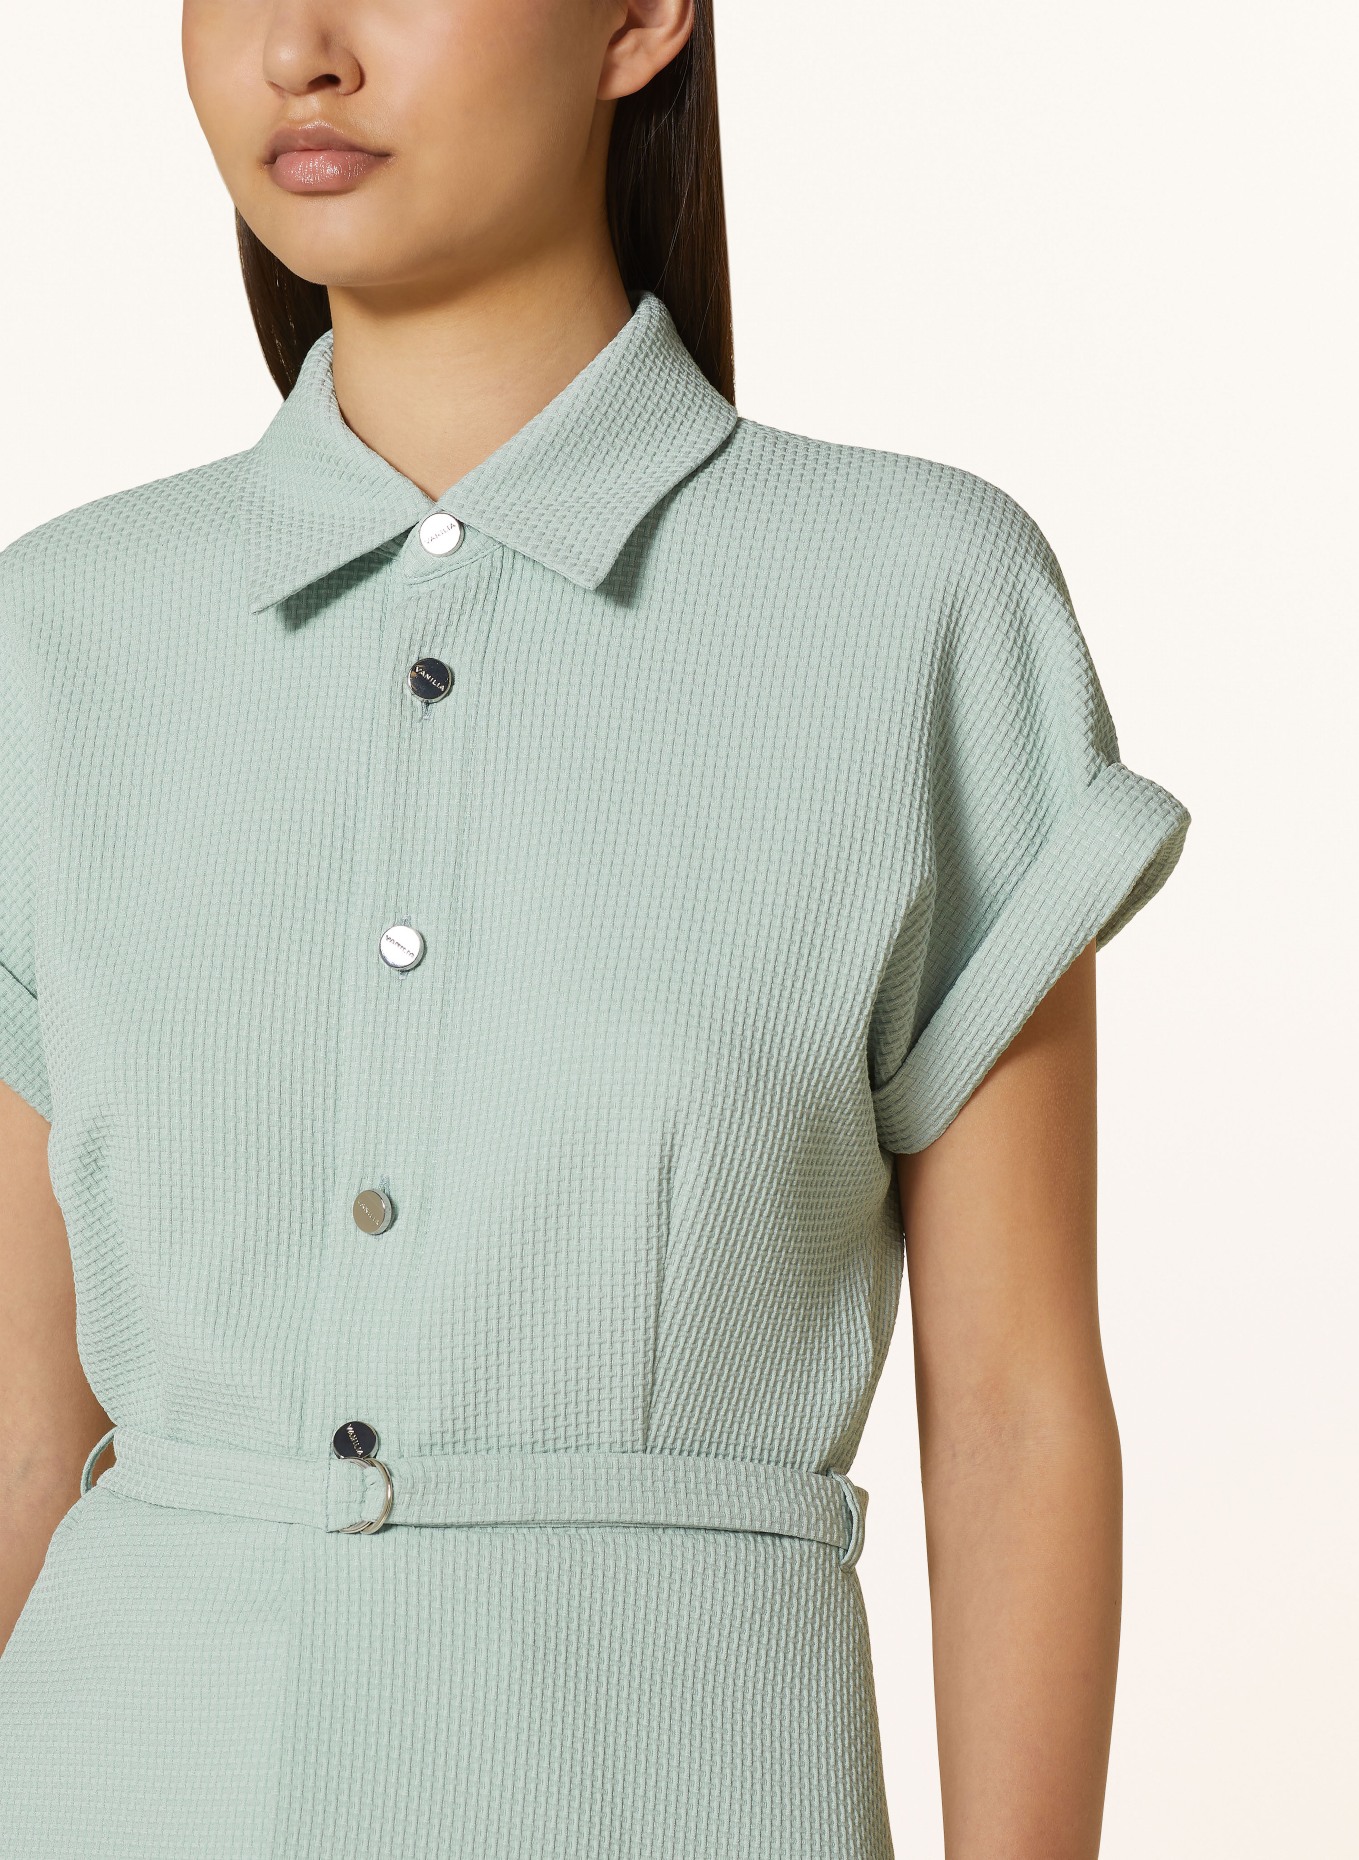 VANILIA Shirt blouse made of piqué, Color: MINT (Image 4)